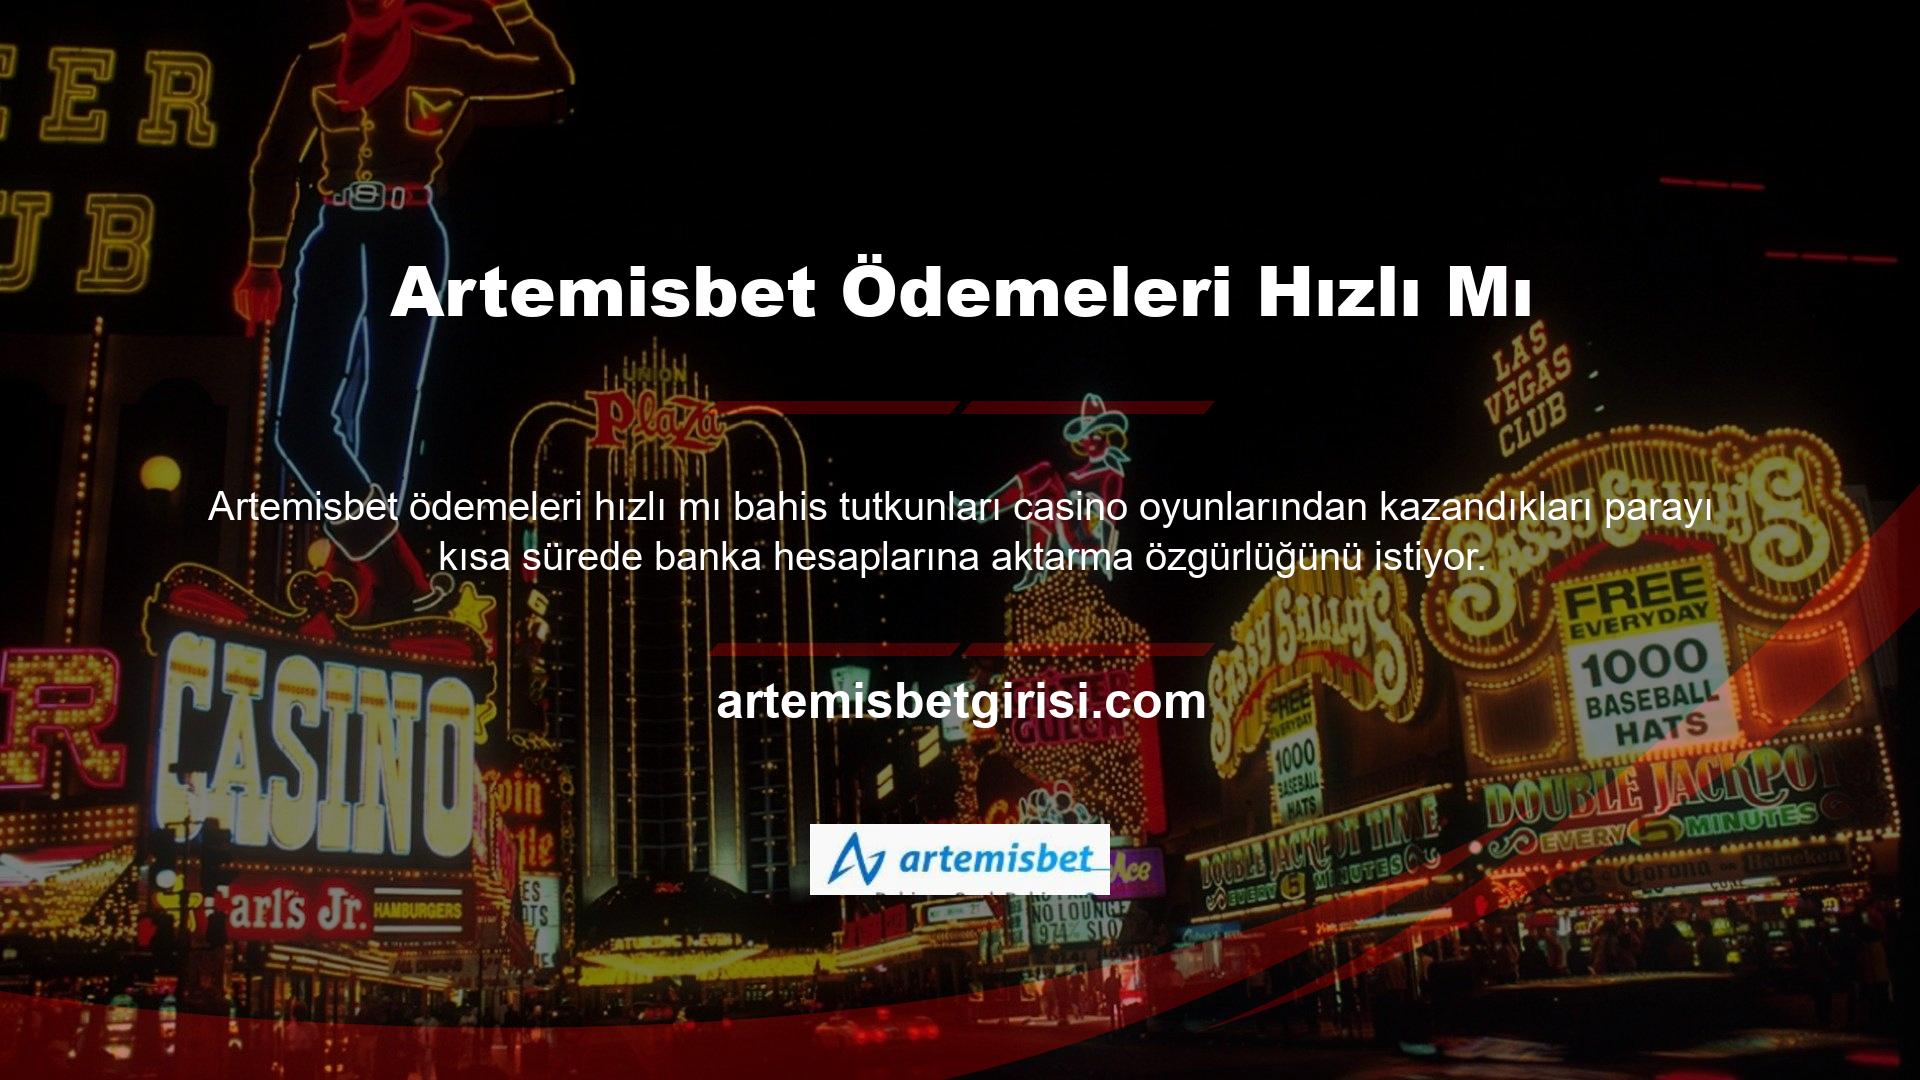 Artemisbet, bahisçilere müşterilerine sunulan transfer seçeneklerinden yararlanarak hızlı ve güvenilir bir şekilde para çekme olanağı sunmaktadır